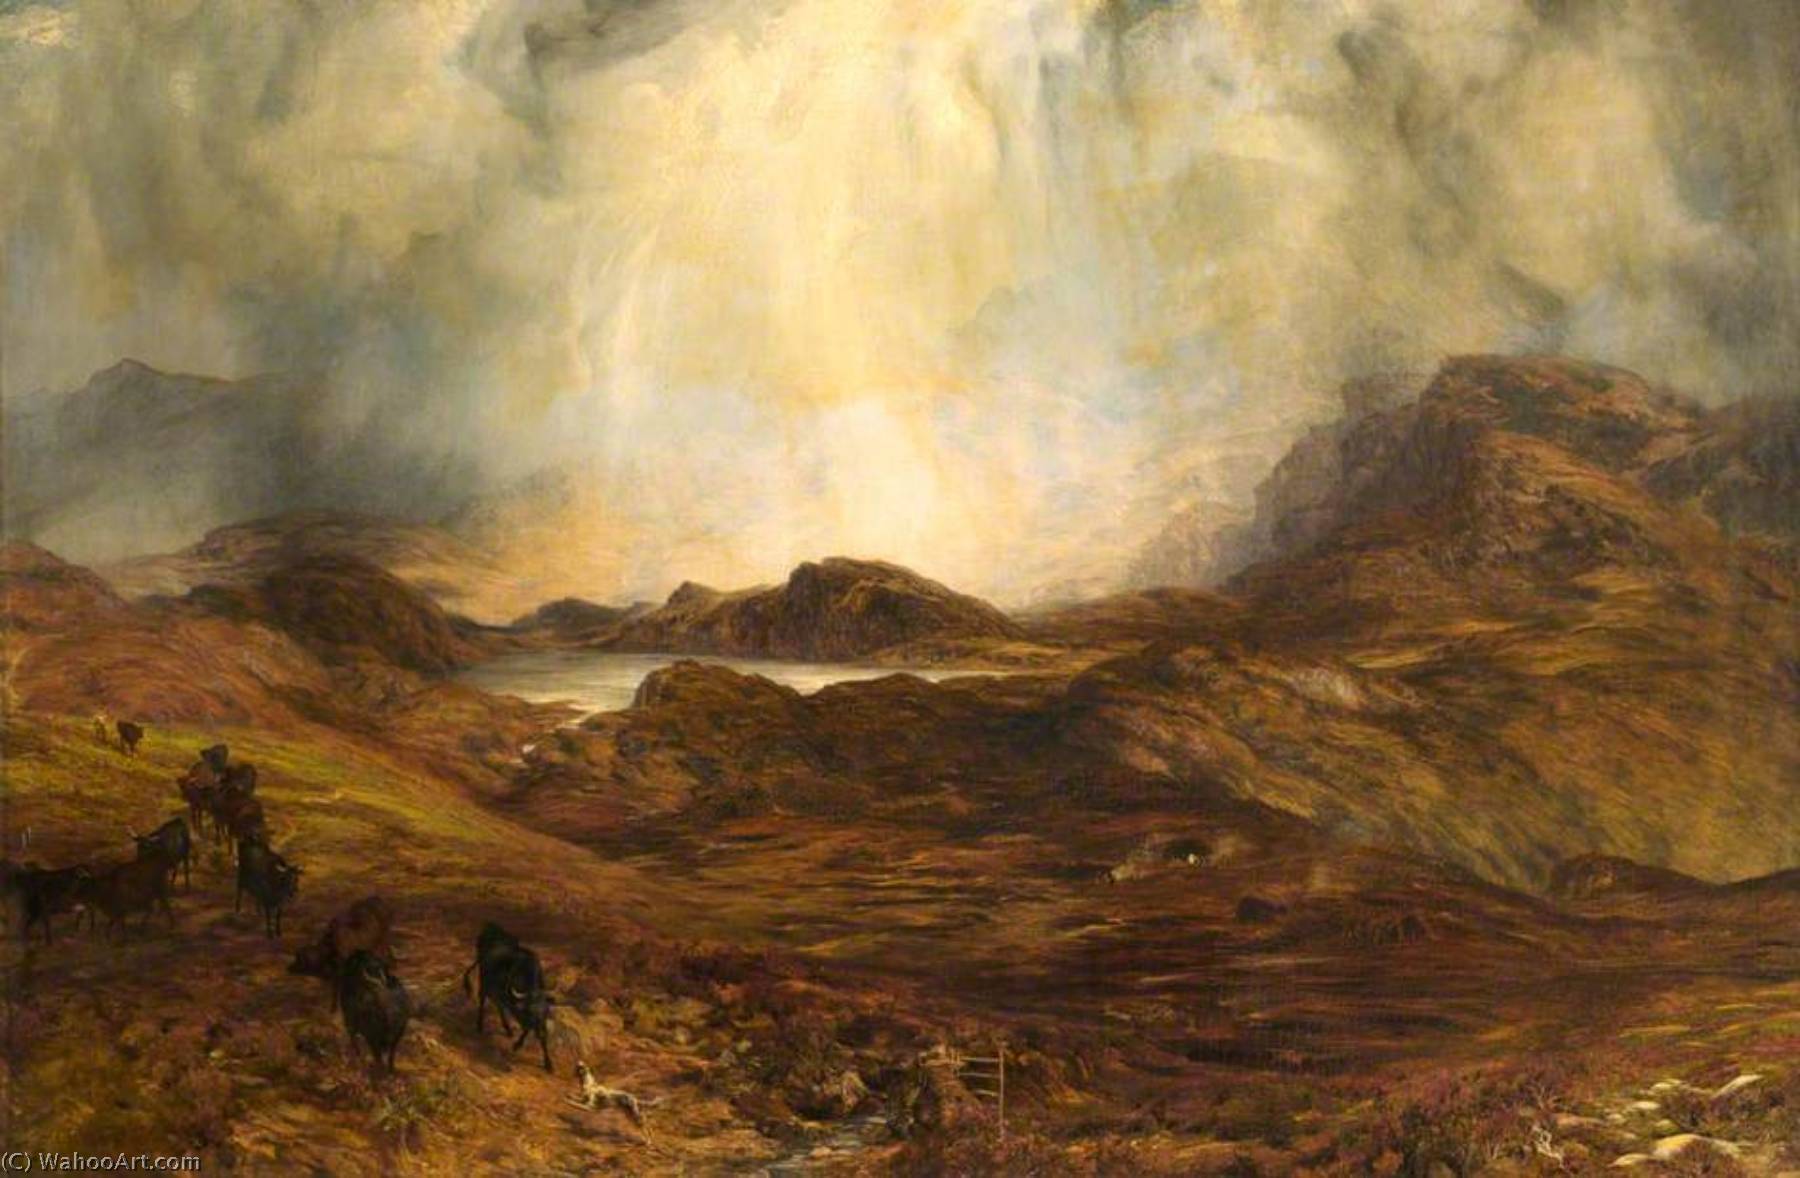 WikiOO.org - אנציקלופדיה לאמנויות יפות - ציור, יצירות אמנות Henry Clarence Whaite - Mountains in Wales